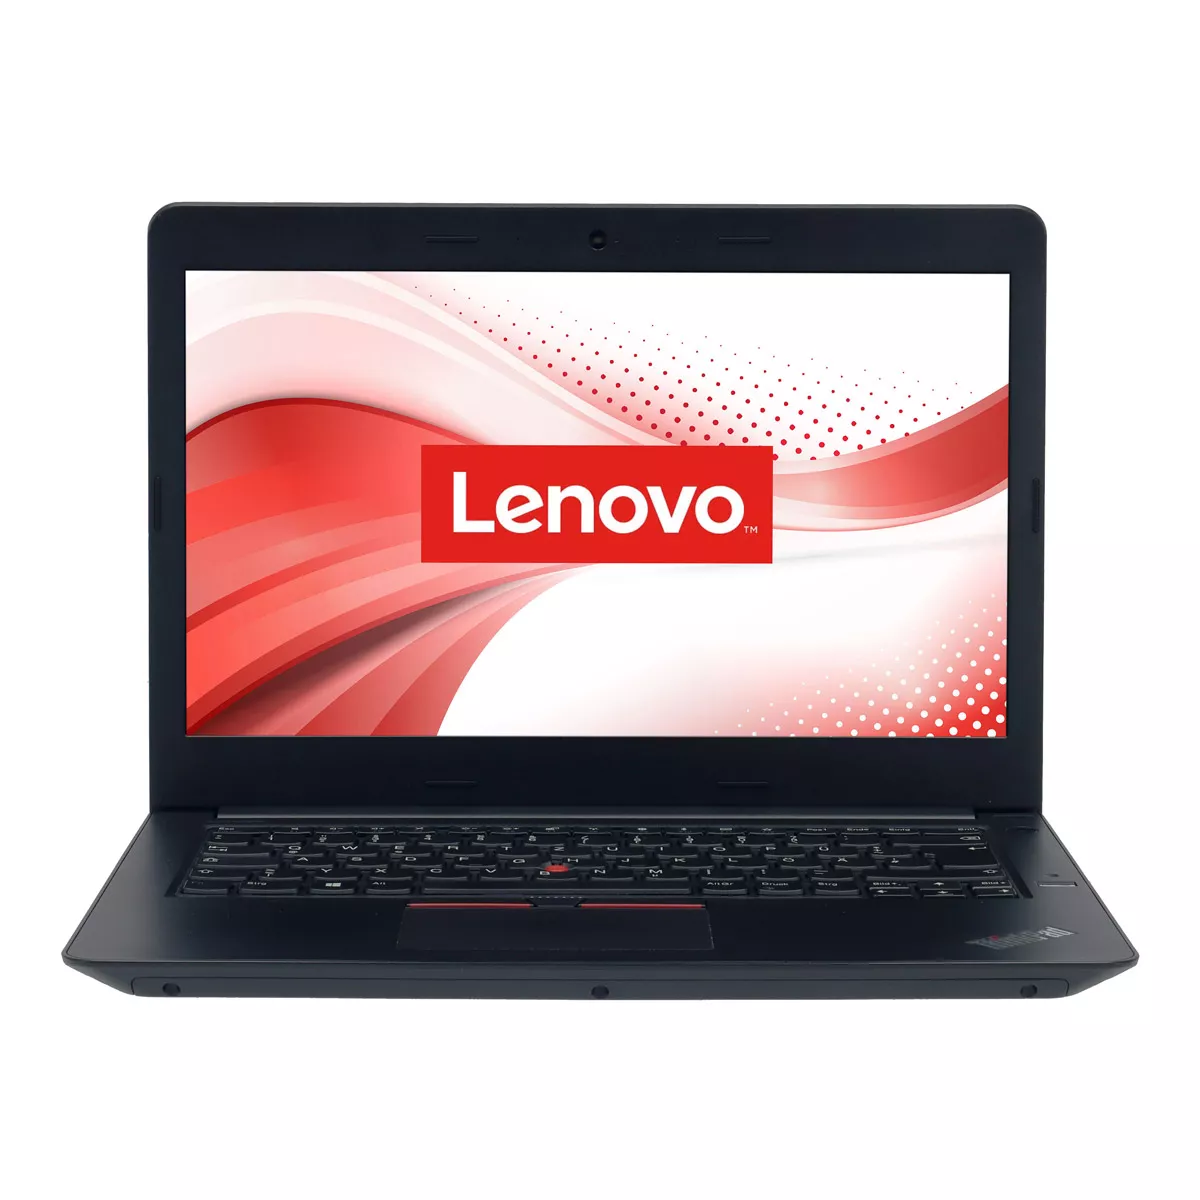 Lenovo ThinkPad E470 Core i5 7200U 8 GB 240 GB SSD Webcam B